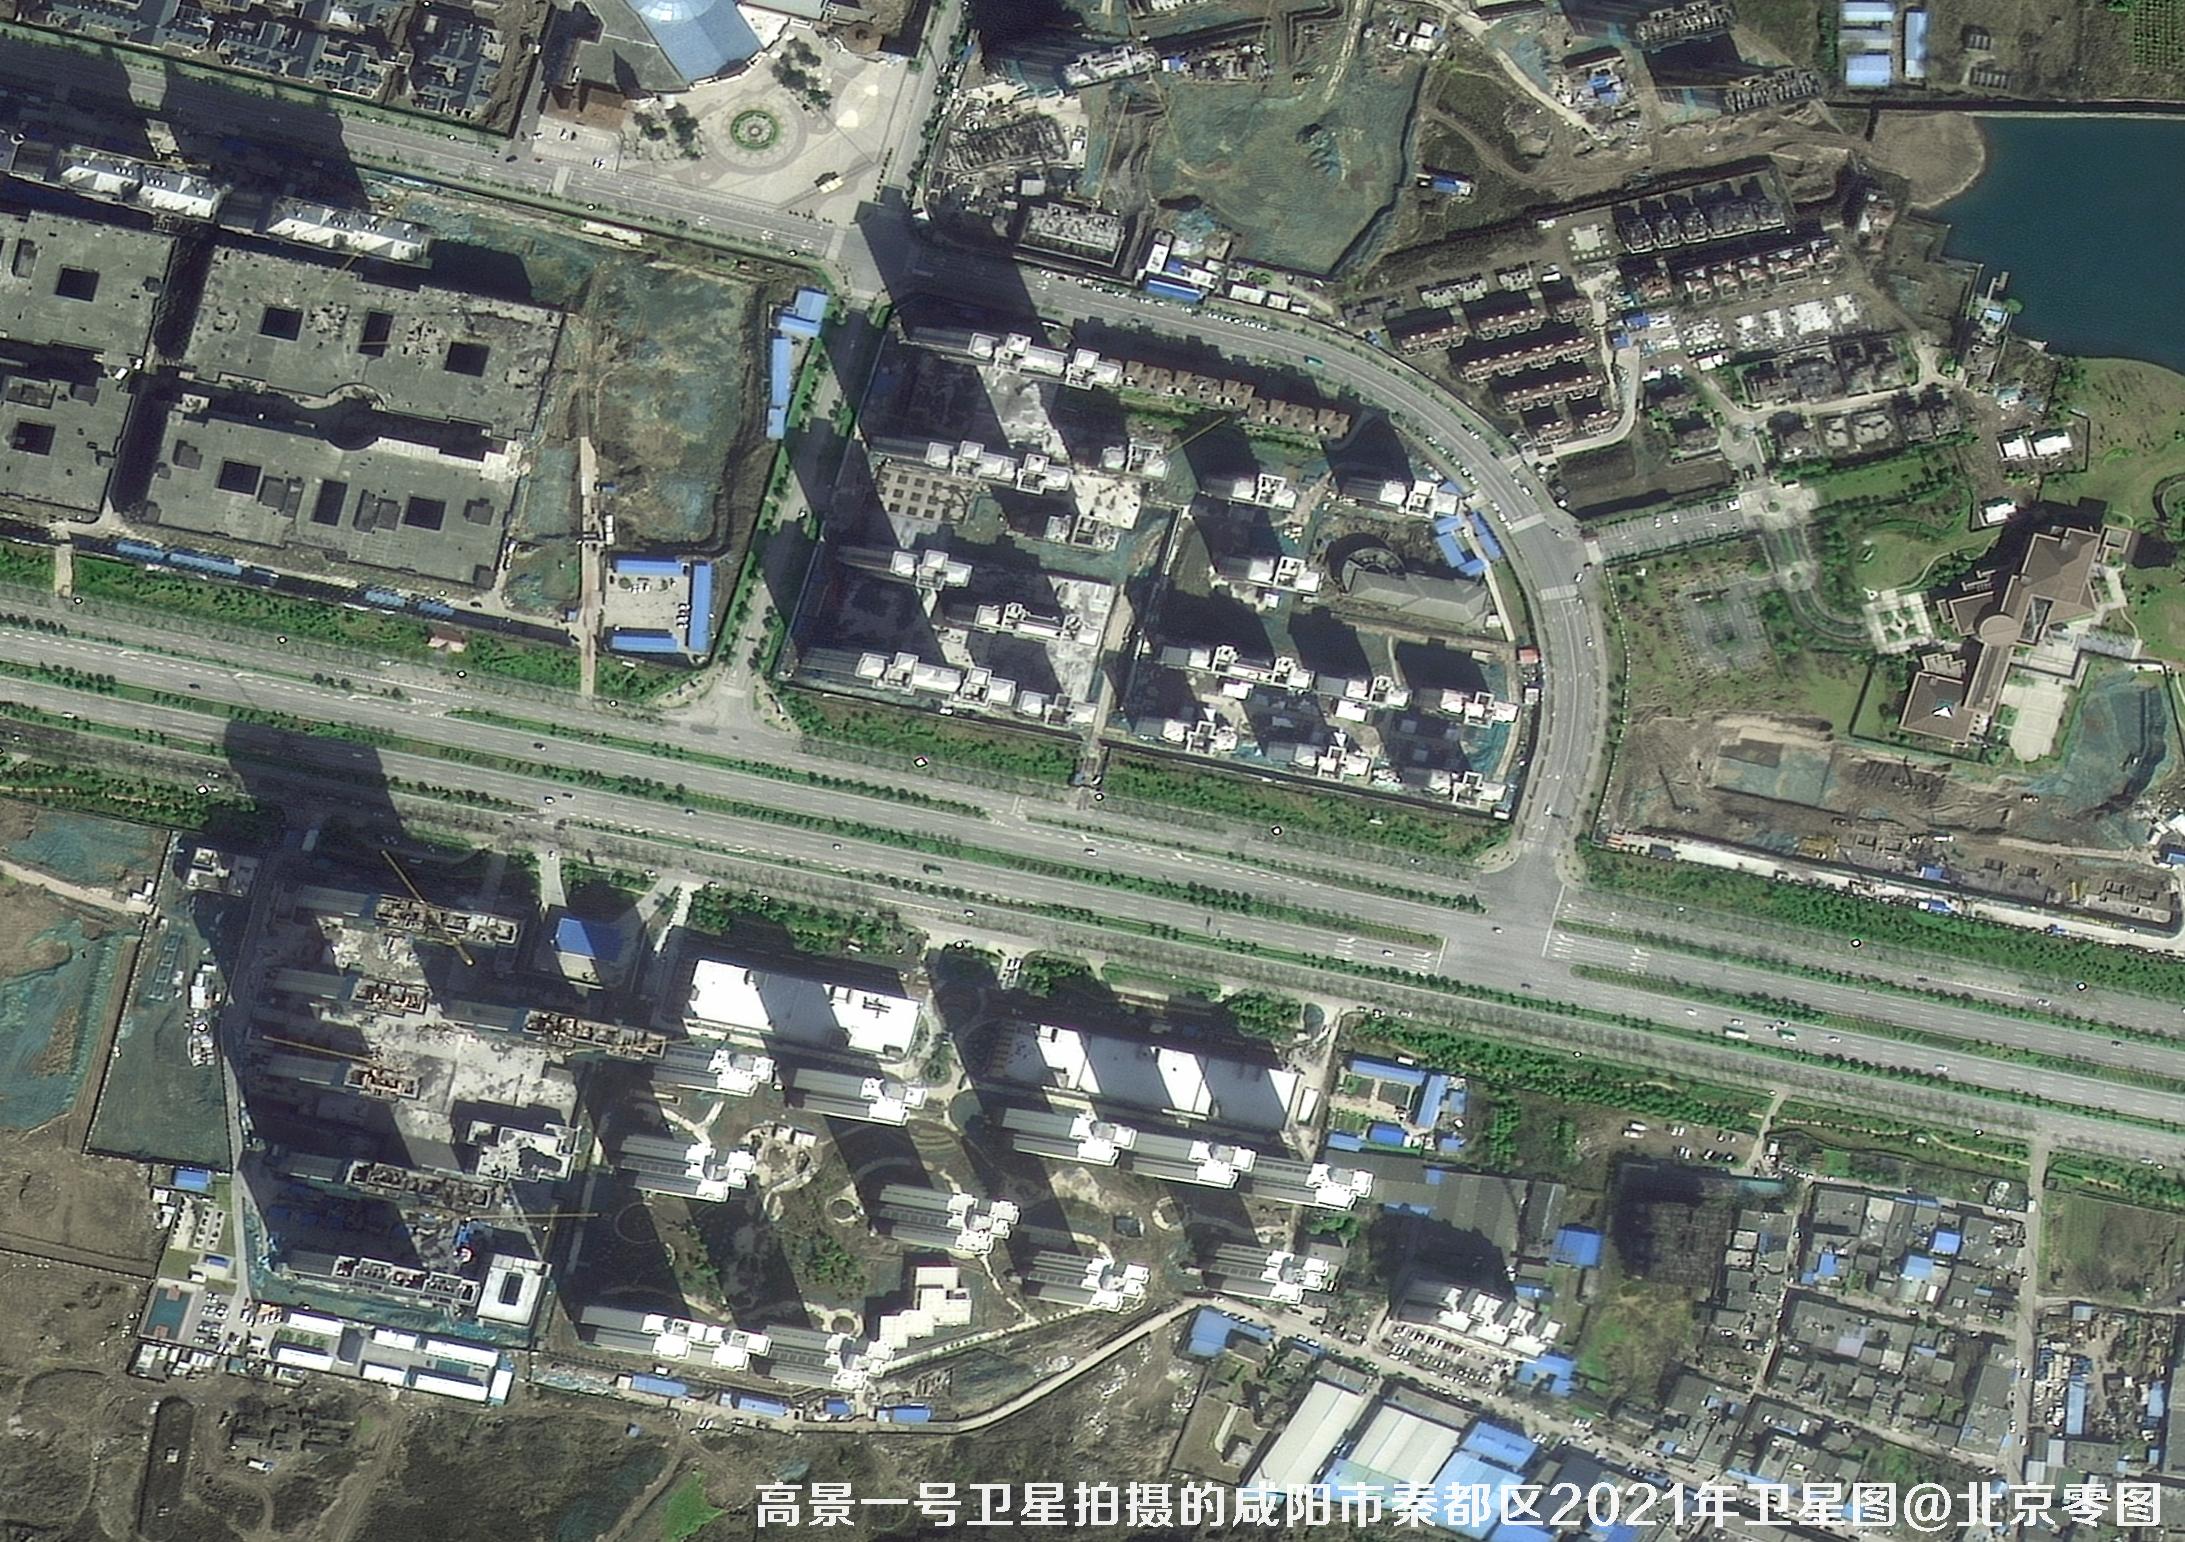 0.5-meter satellite image taken by SuperView Satellite 